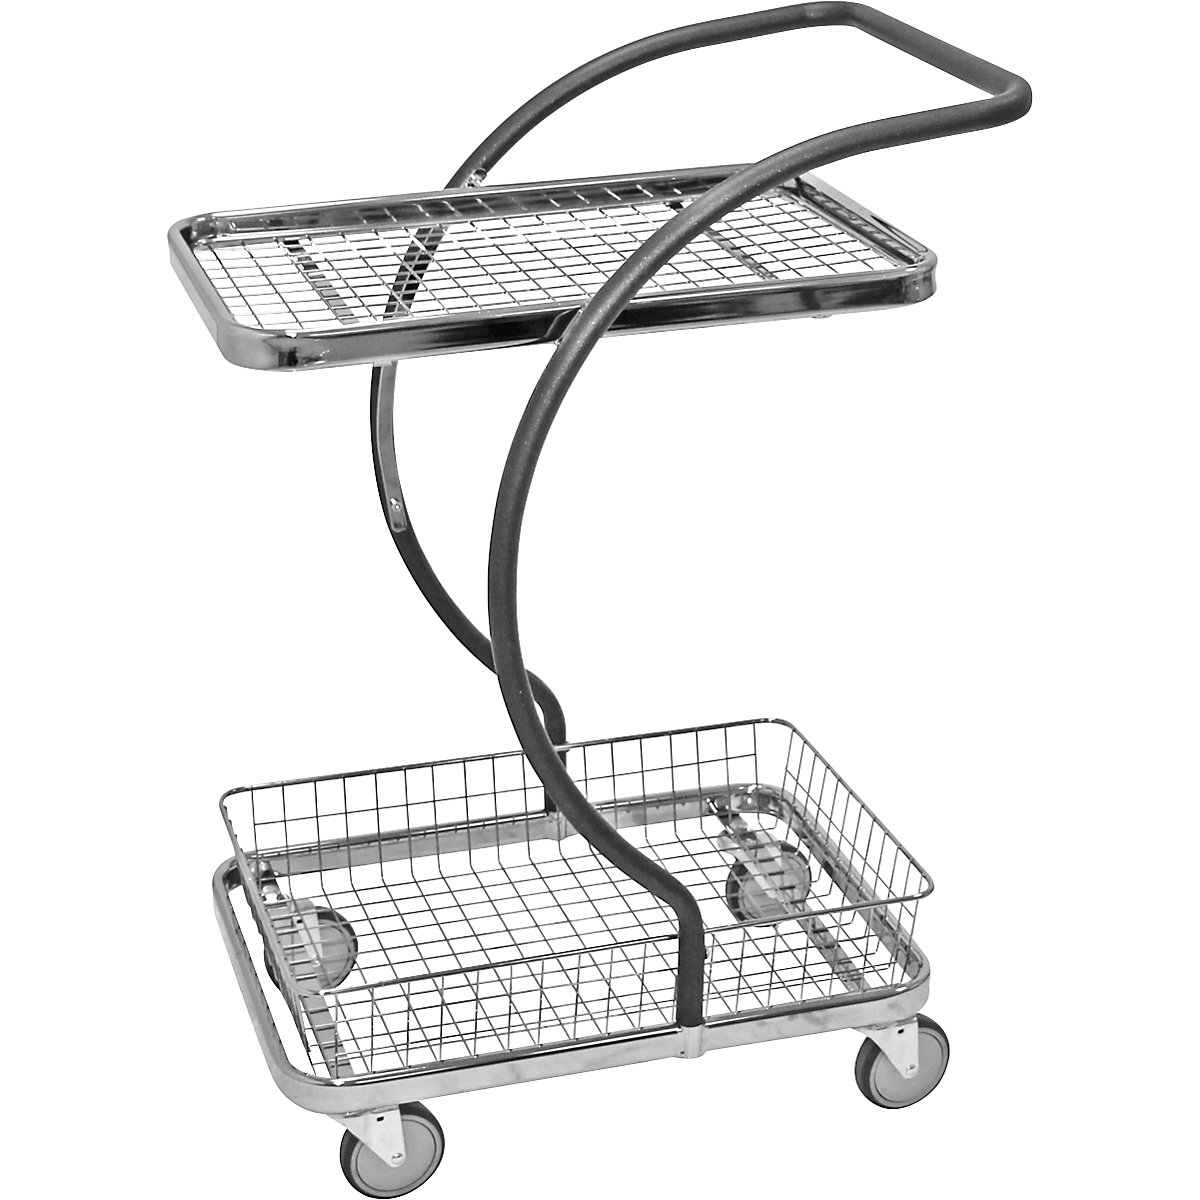 C-LINE nákupní a stolový vozík – Kongamek, s 1 drátěnou etáží, 1 drátěný koš, výšky etáží 160, 630 mm, od 2 ks-8